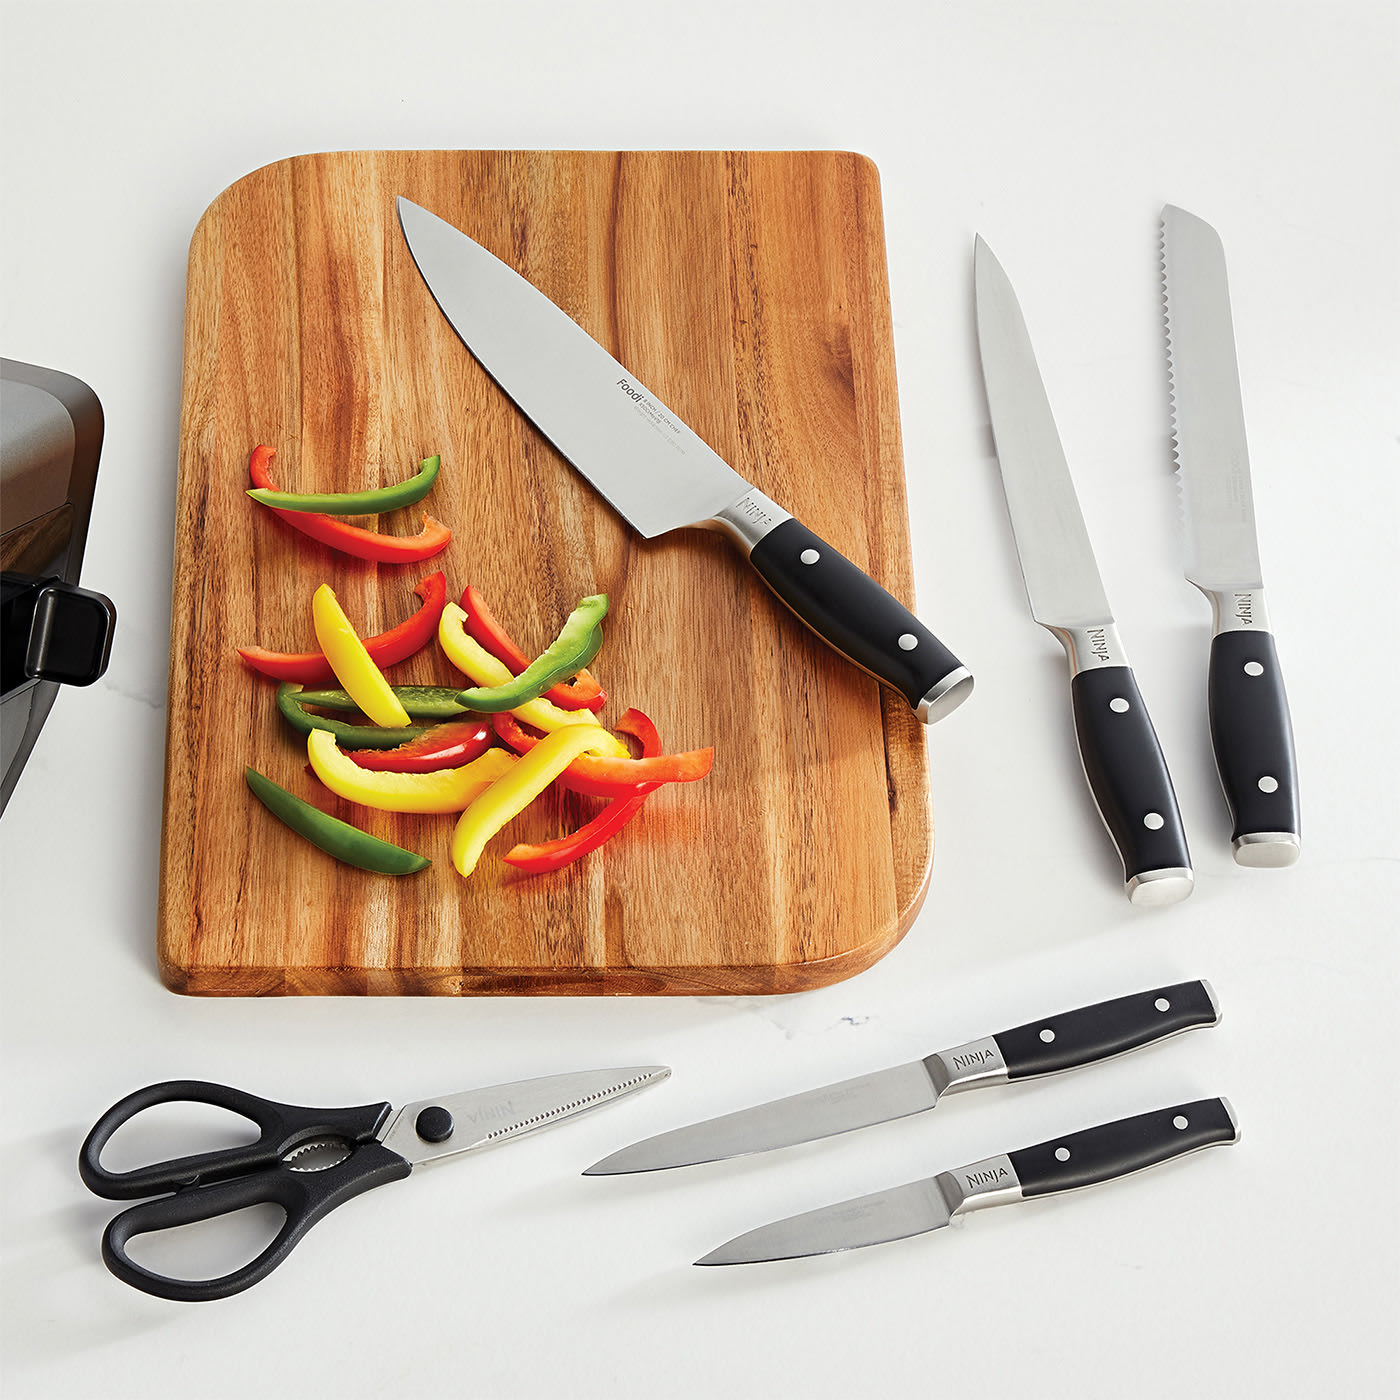 Sharp Pebble Orange Ninja 4-Stage Knife Sharpener - Manual Knife